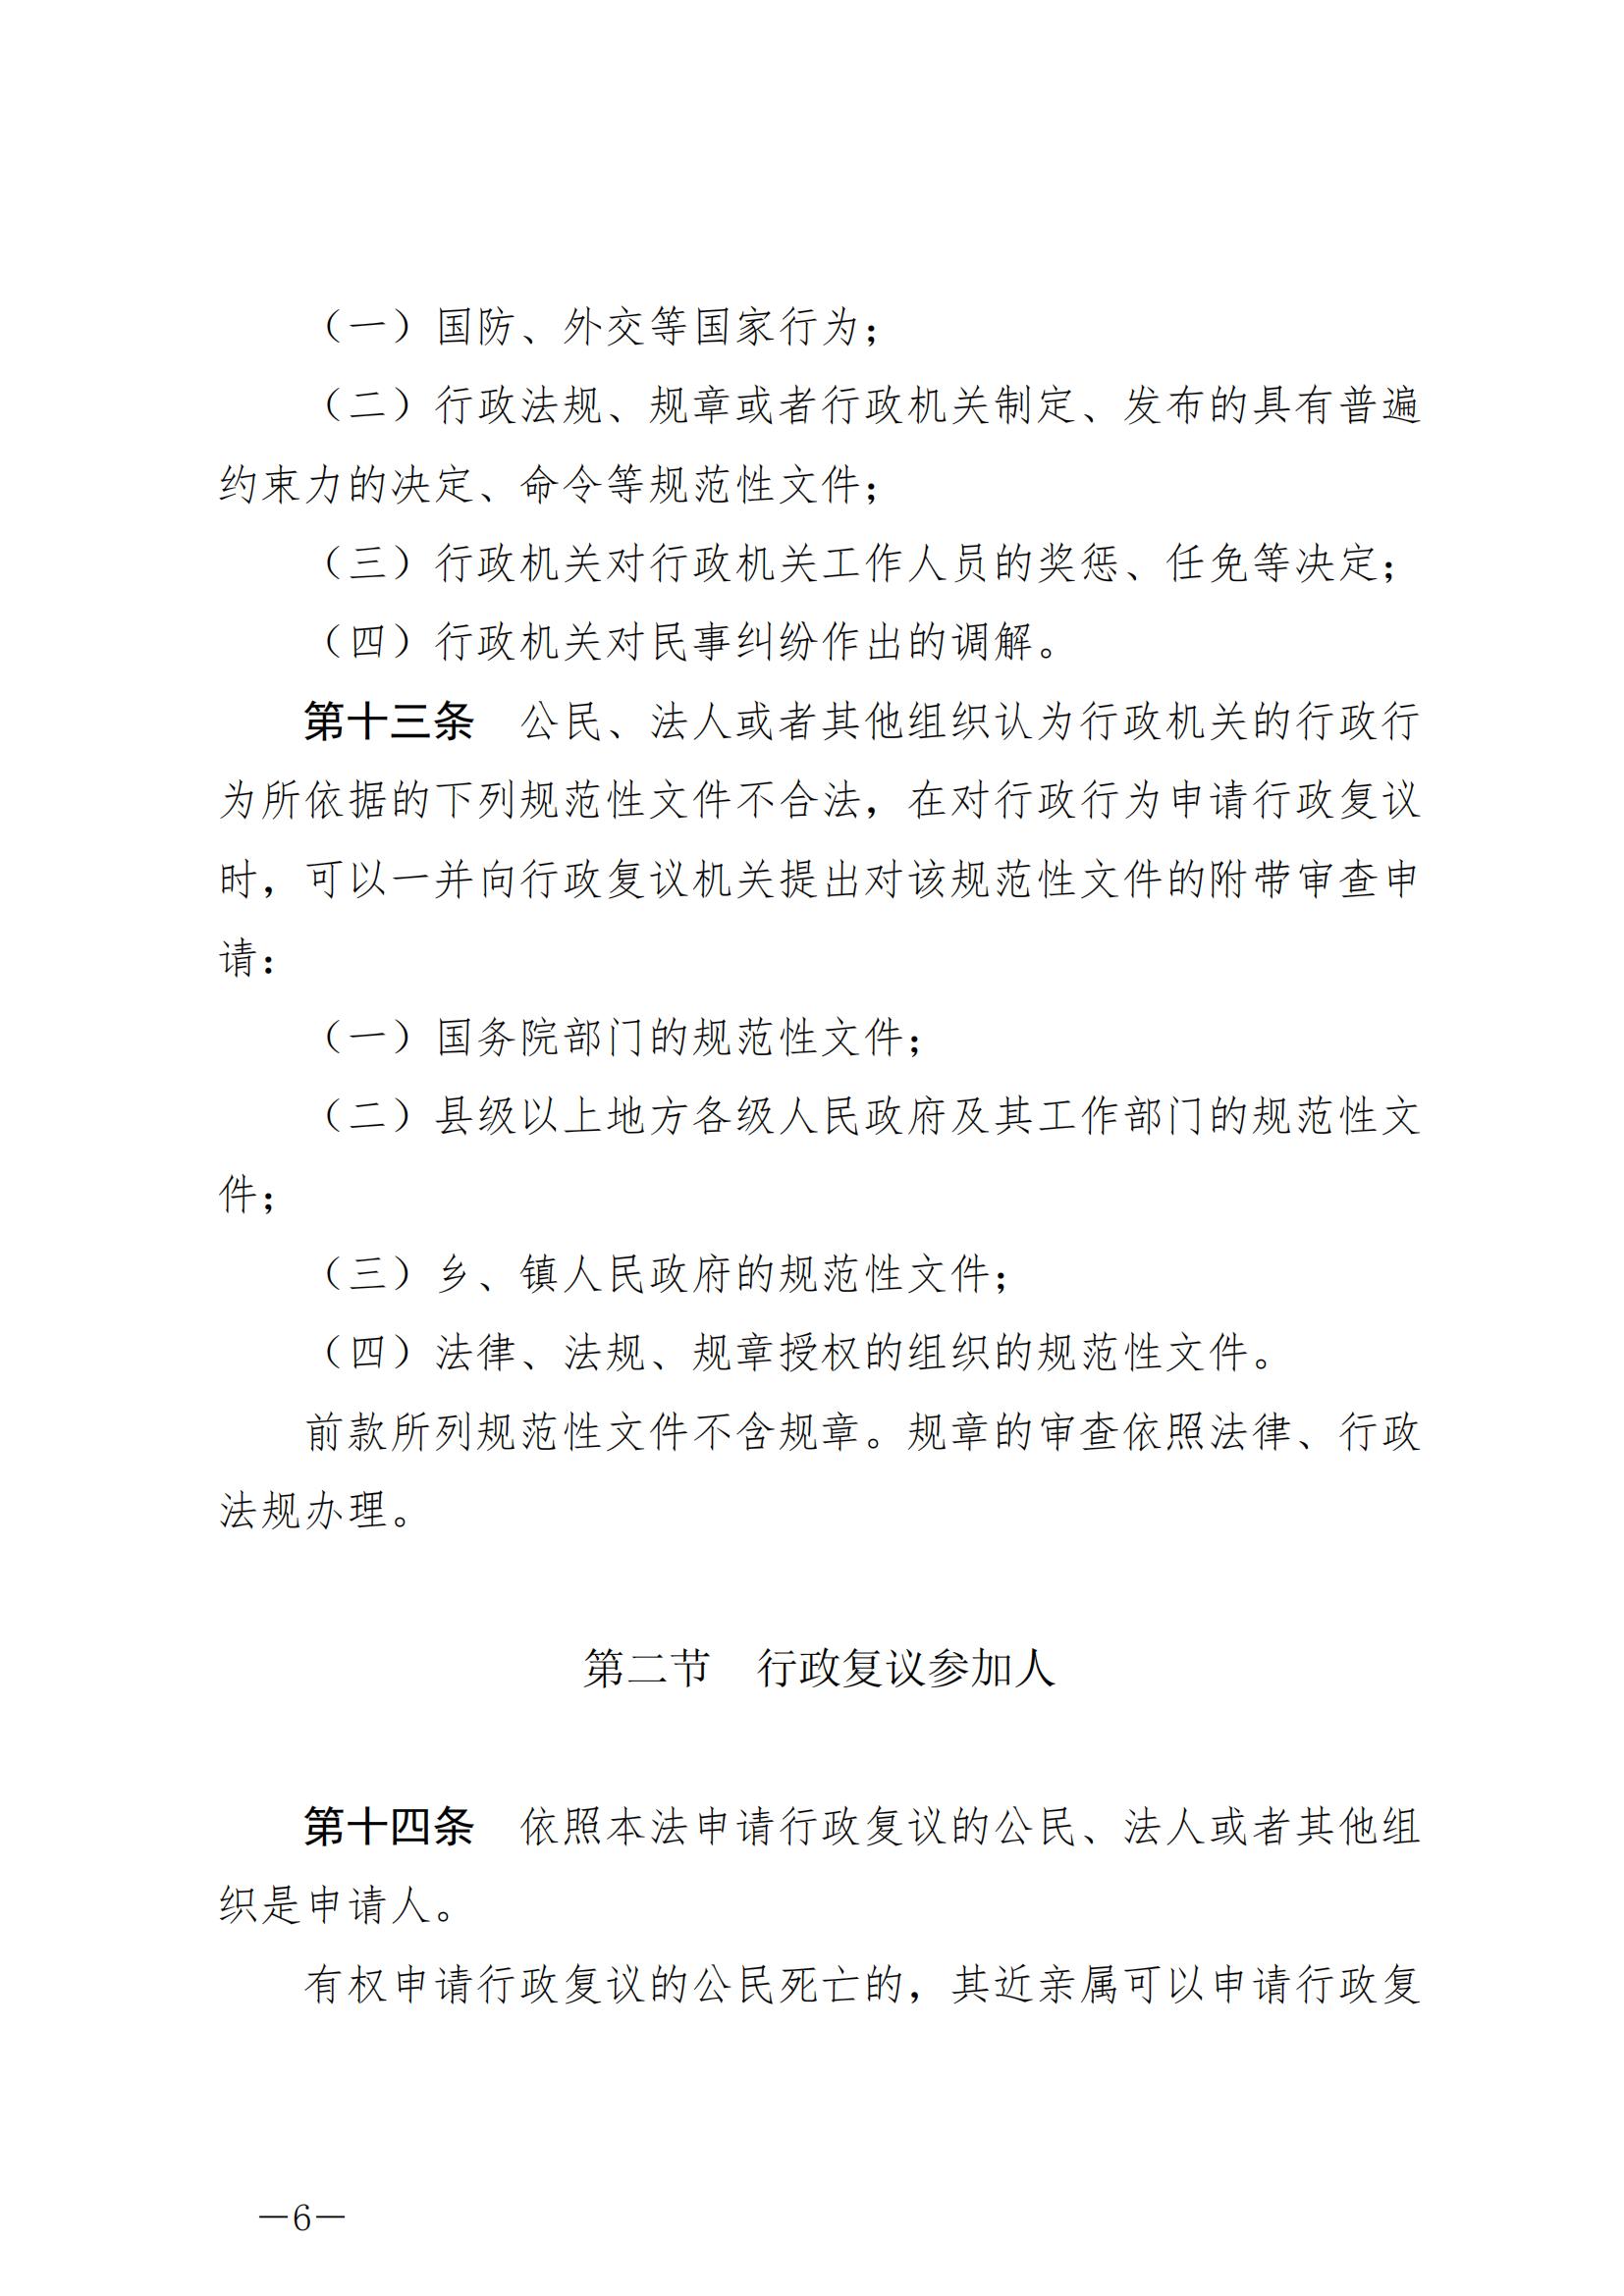 《中华人民共和国行政复议法》_20231204154310_05.jpg